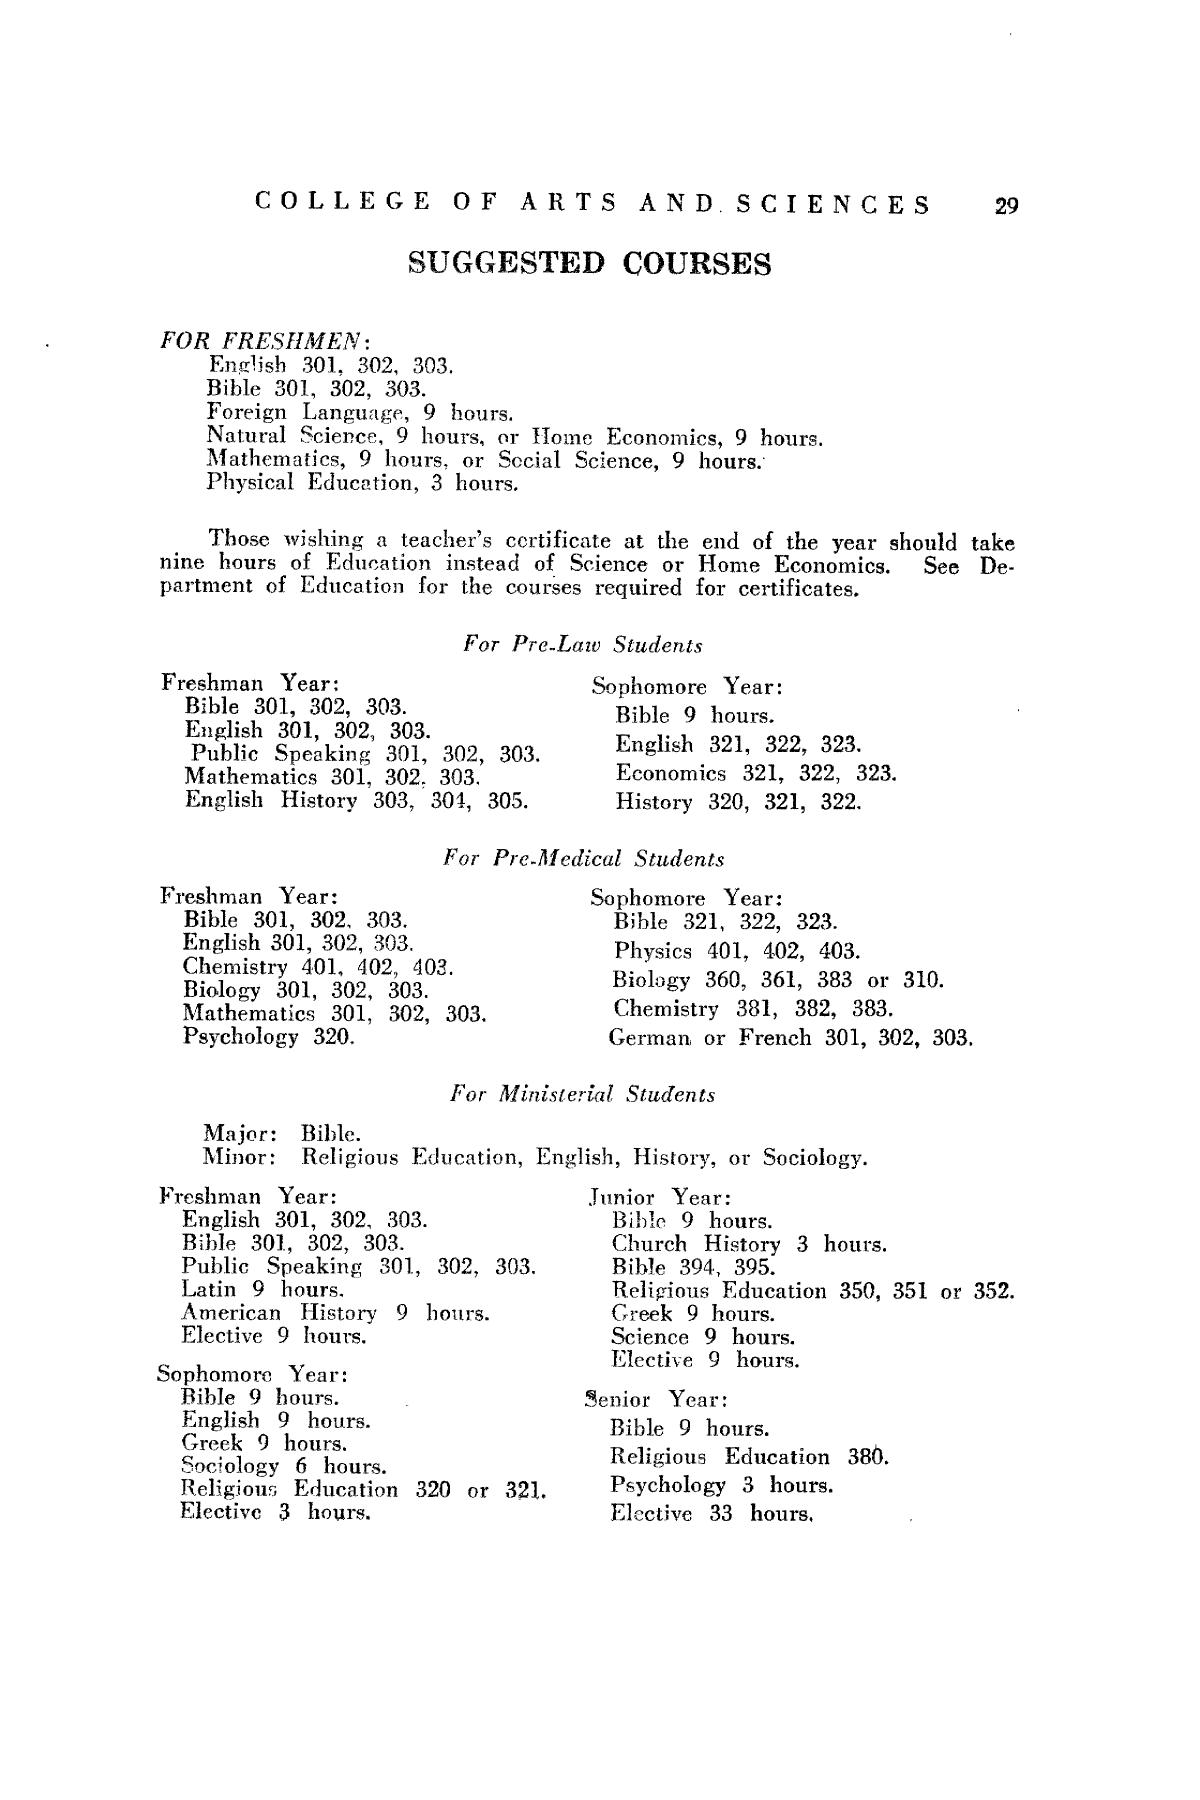 Catalog of Abilene Christian College, 1932-1933
                                                
                                                    29
                                                